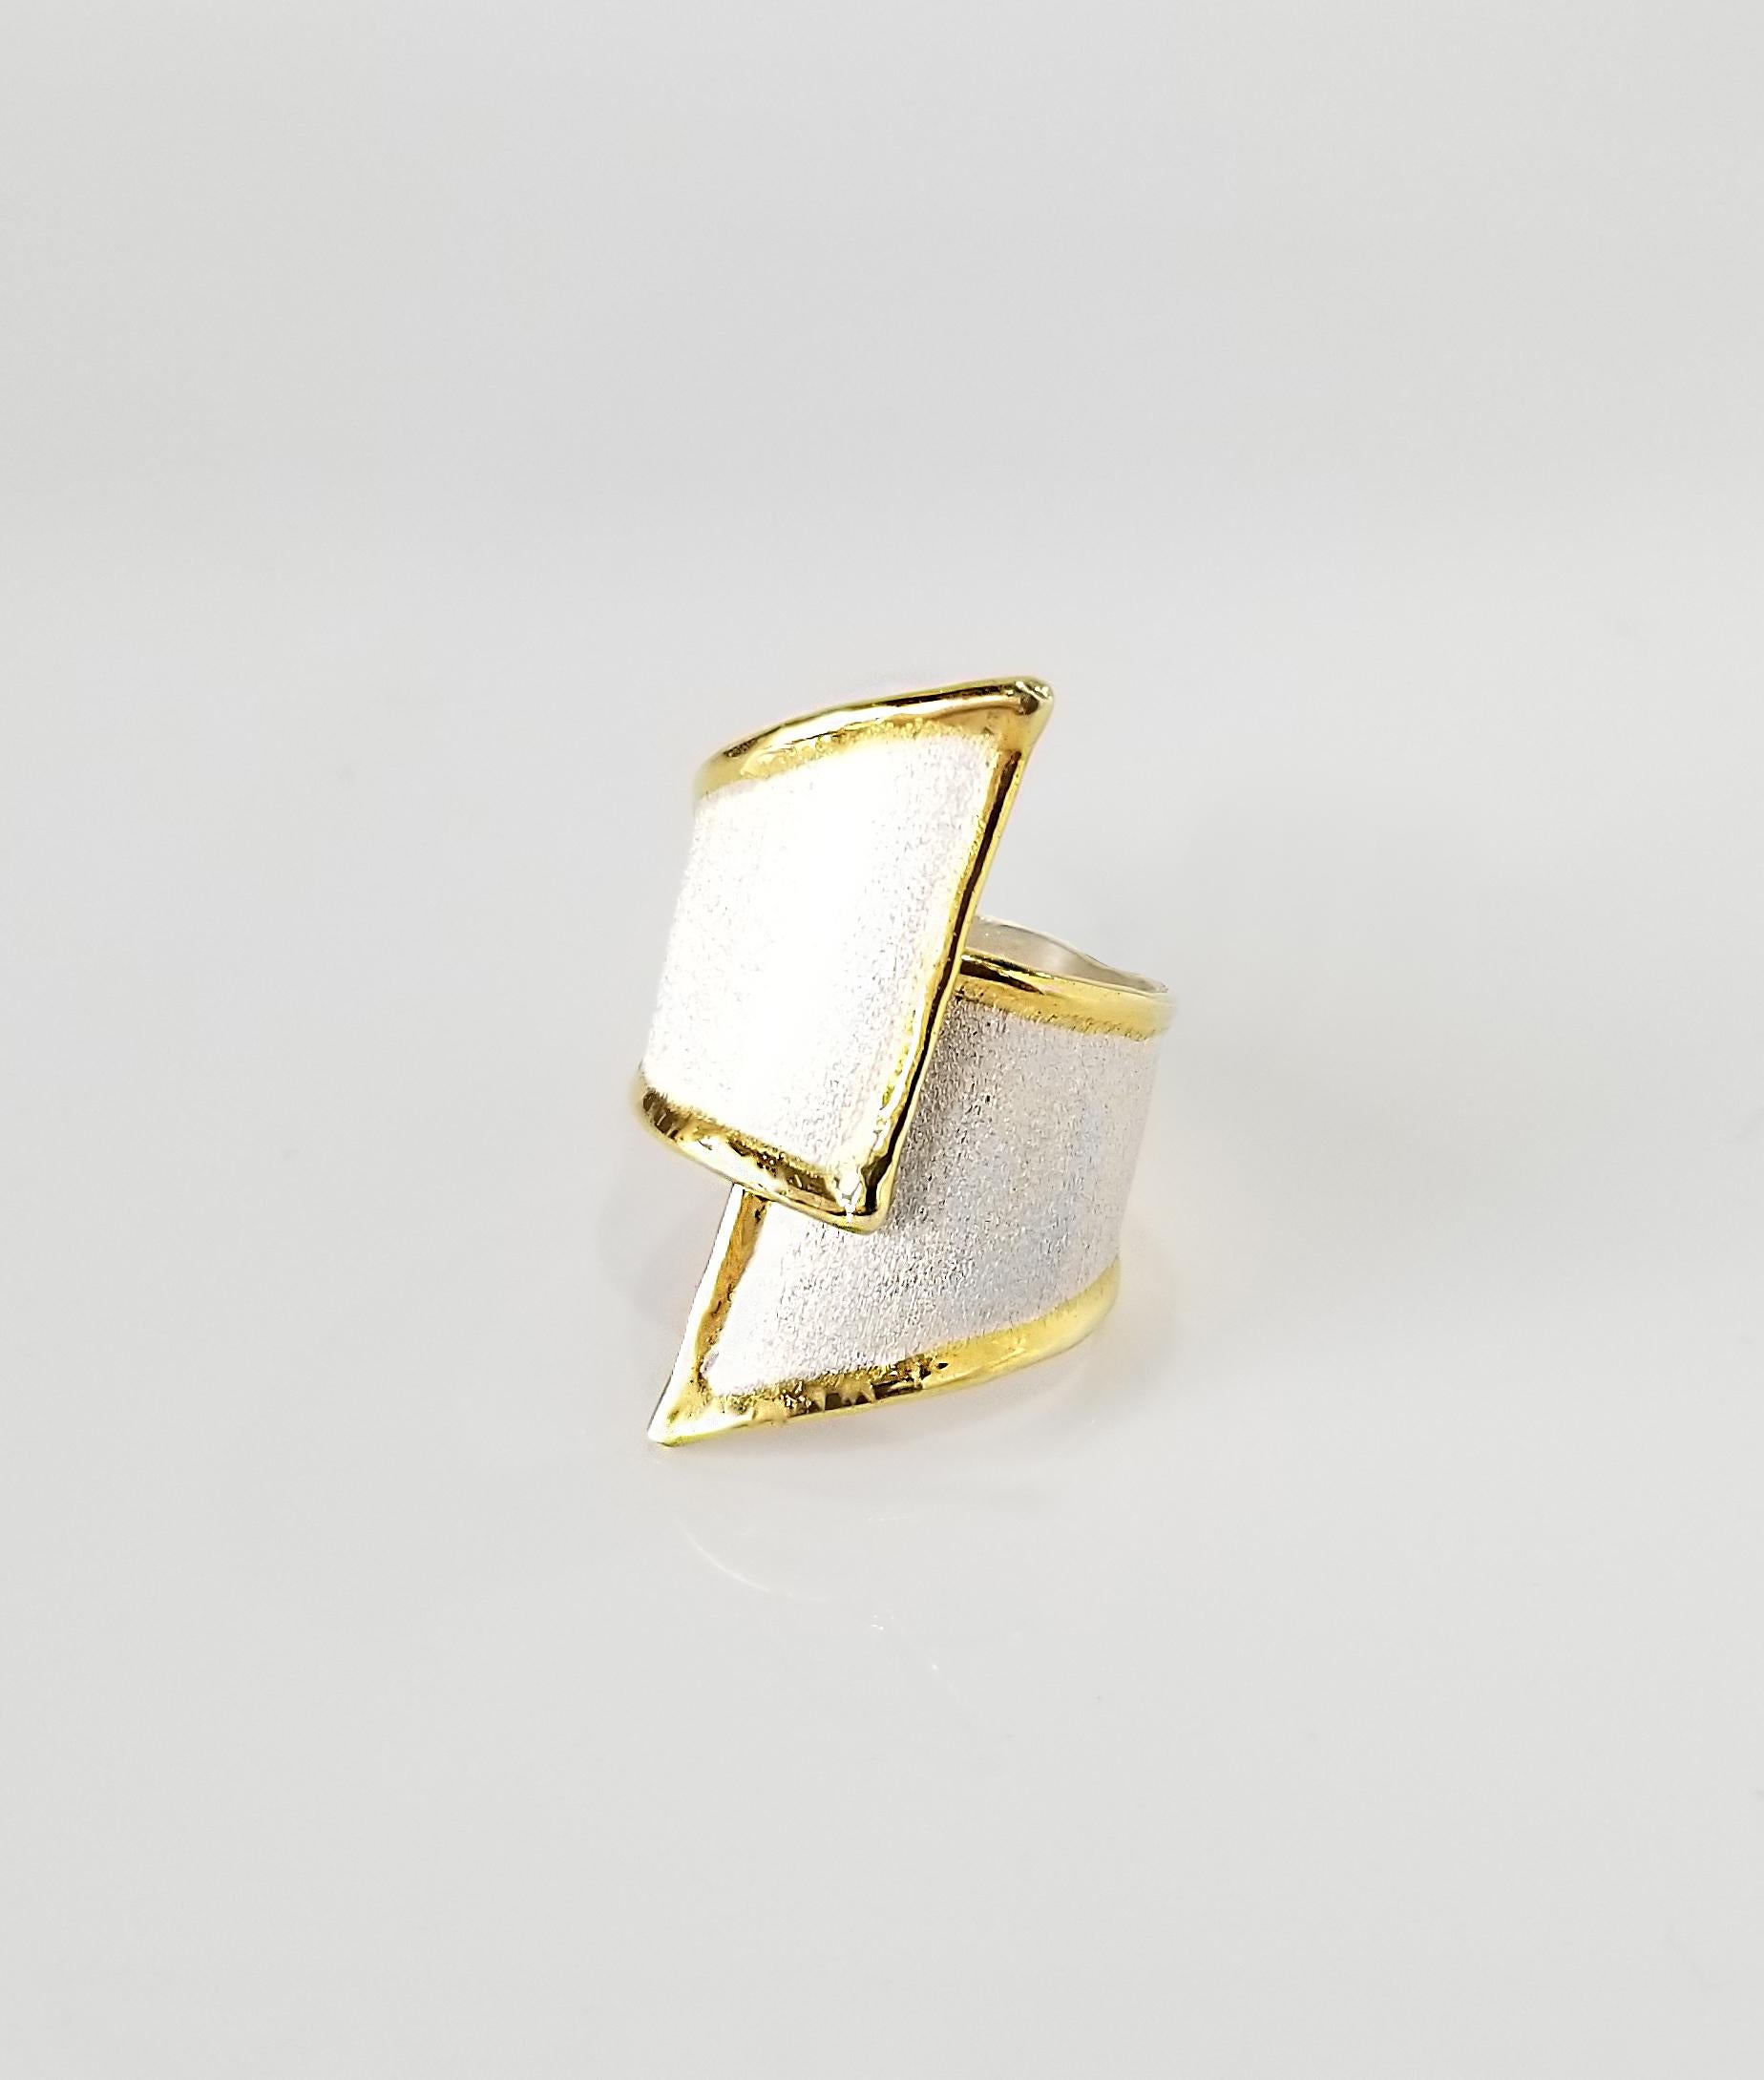 Präsentiert Yianni Creations Midas Collection handgefertigten Ring aus feinem Silber 950 Reinheit plattiert mit Palladium zu widerstehen Elemente. Die Flüssigkeitsränder sind mit einem dicken Überzug aus 24 Karat Gelbgold verziert. Der Ring ist